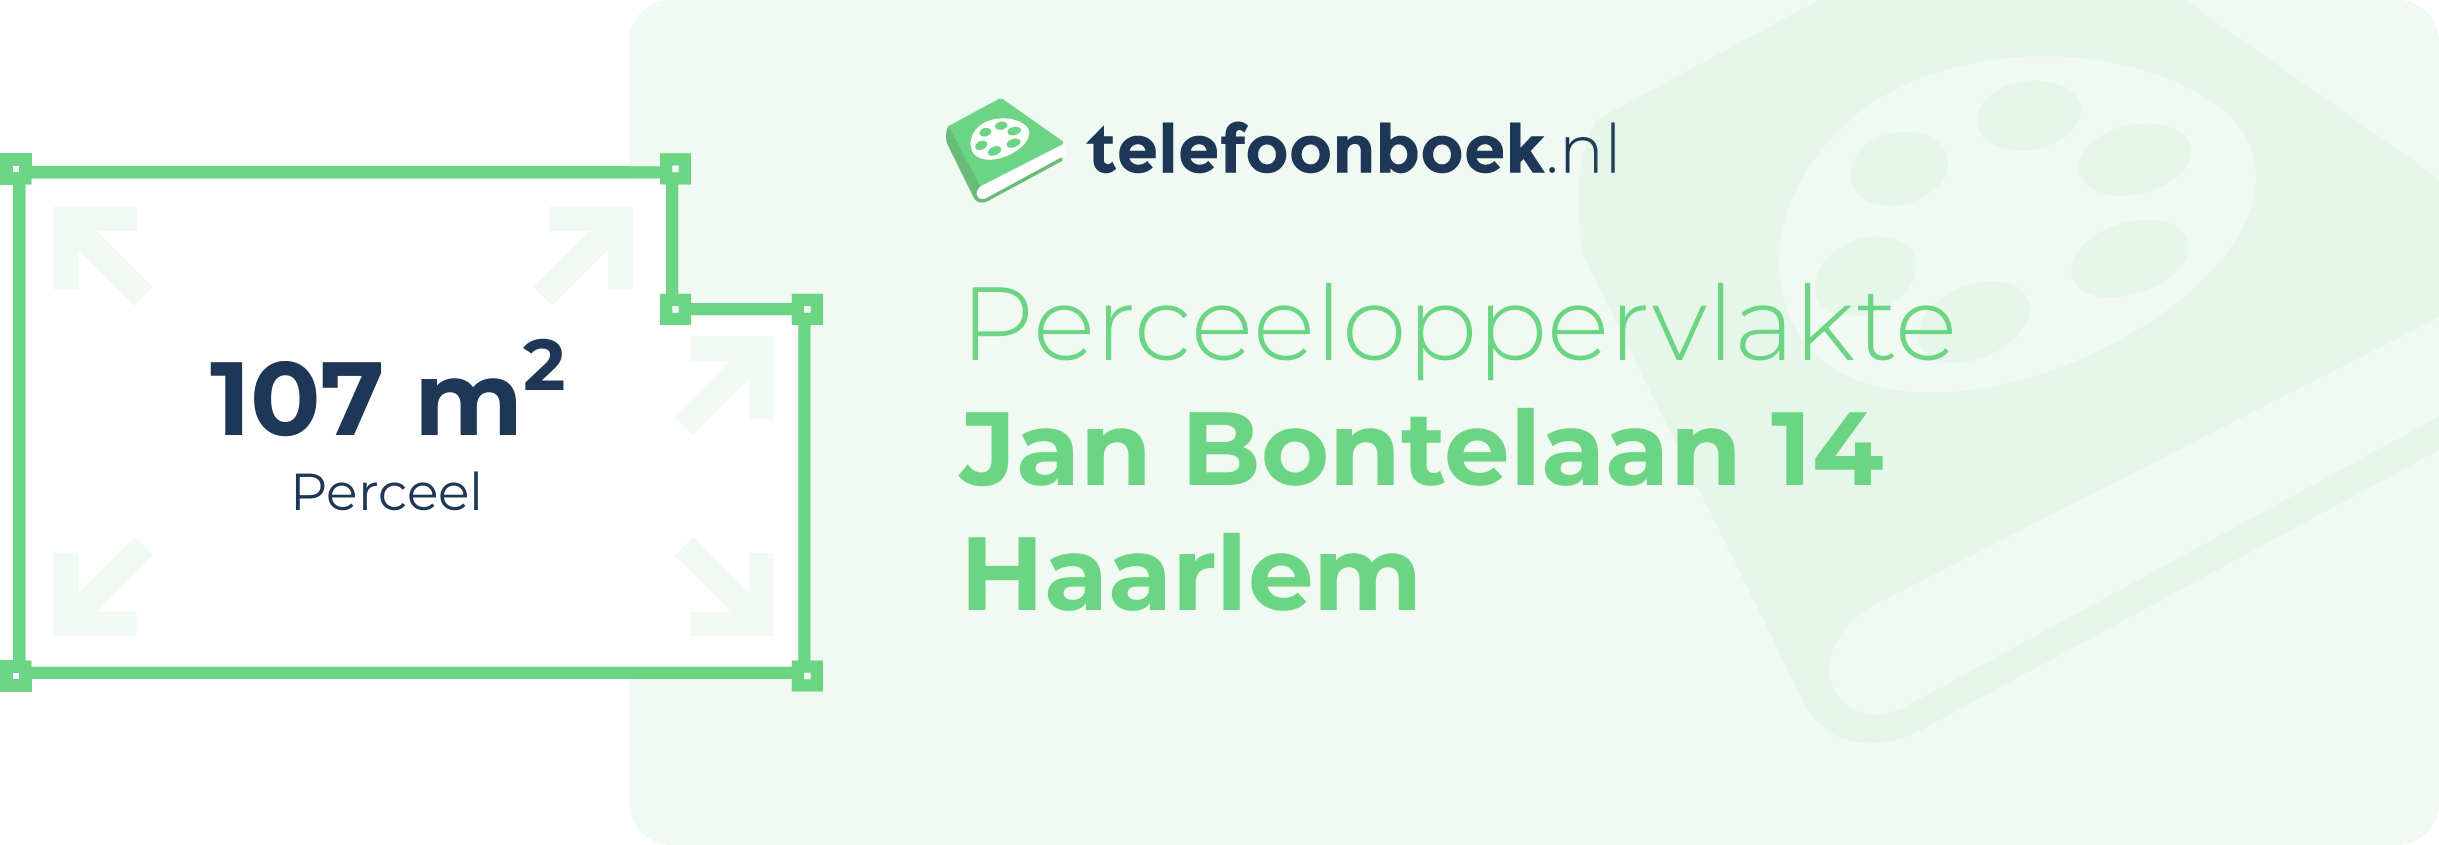 Perceeloppervlakte Jan Bontelaan 14 Haarlem